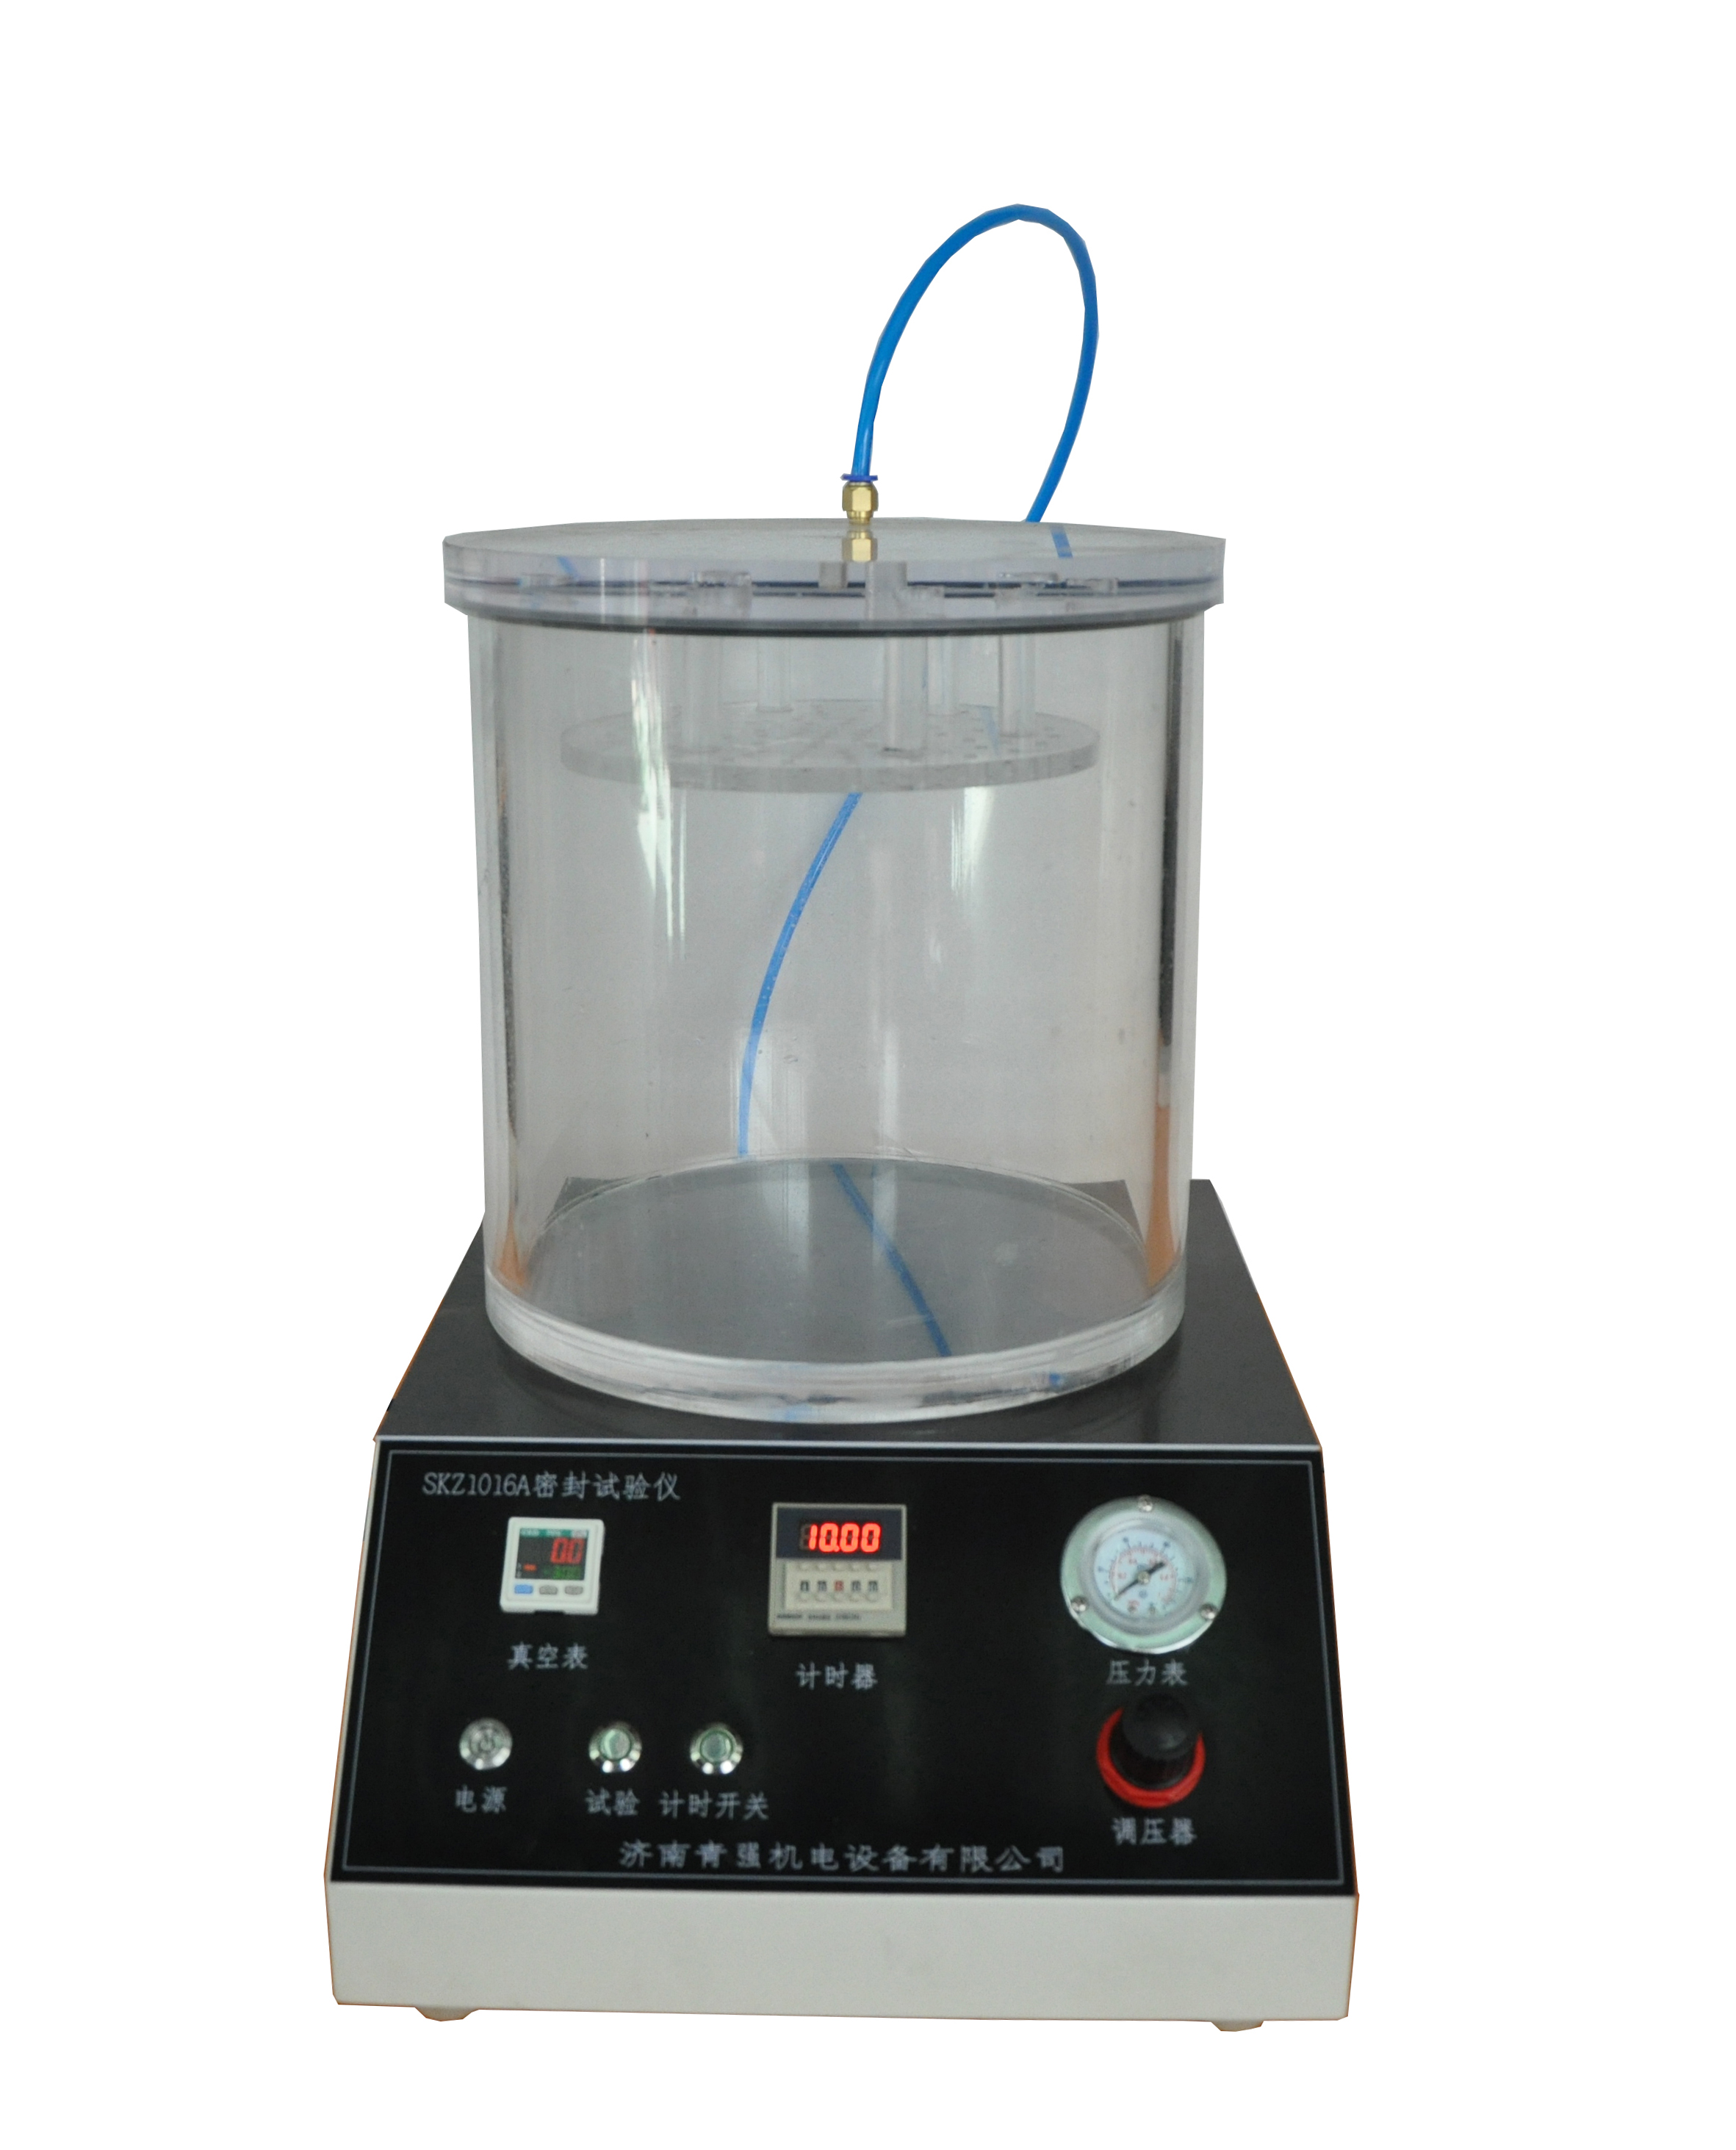 密封测试仪是一种以利用压缩空气通过真空原件组产生负压来检测和检验塑料软包装材料的热封性能及加工工艺，真空度0-90Kpa.